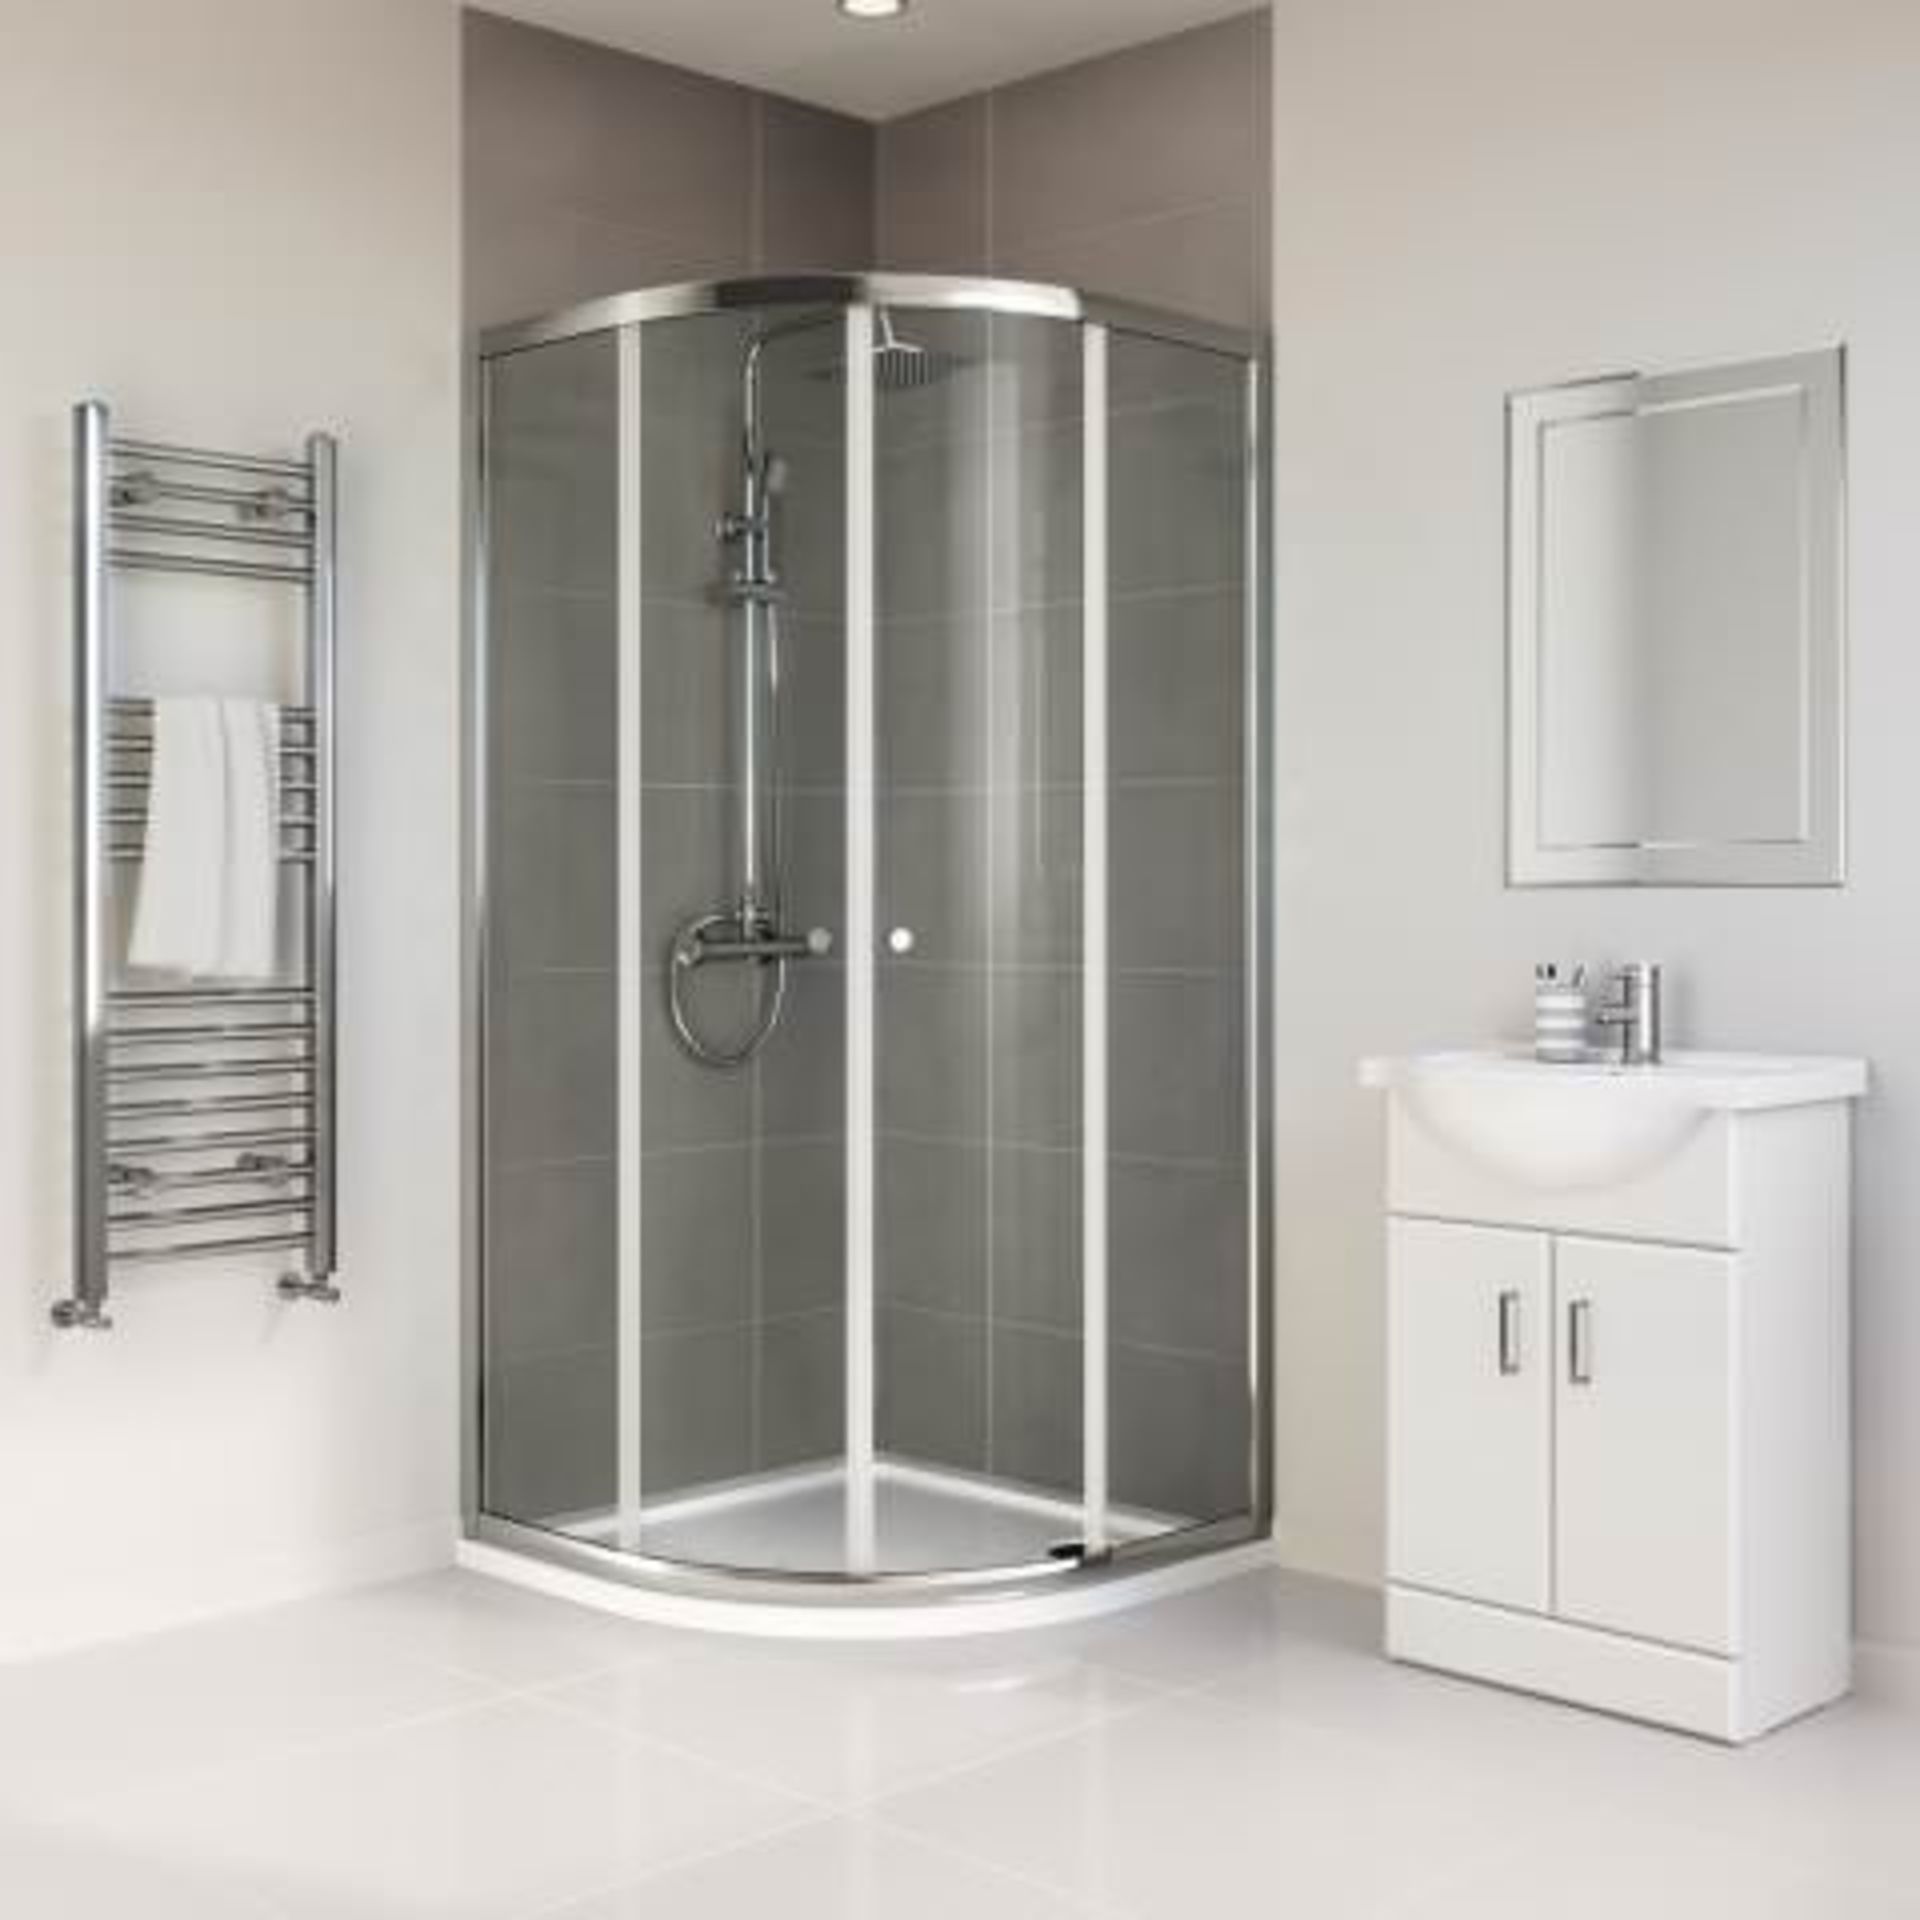 NEW (C202) 900x900mm - Elements Quadrant Shower Enclosure. RRP £229.99. Budget Solution Our en... - Image 2 of 3